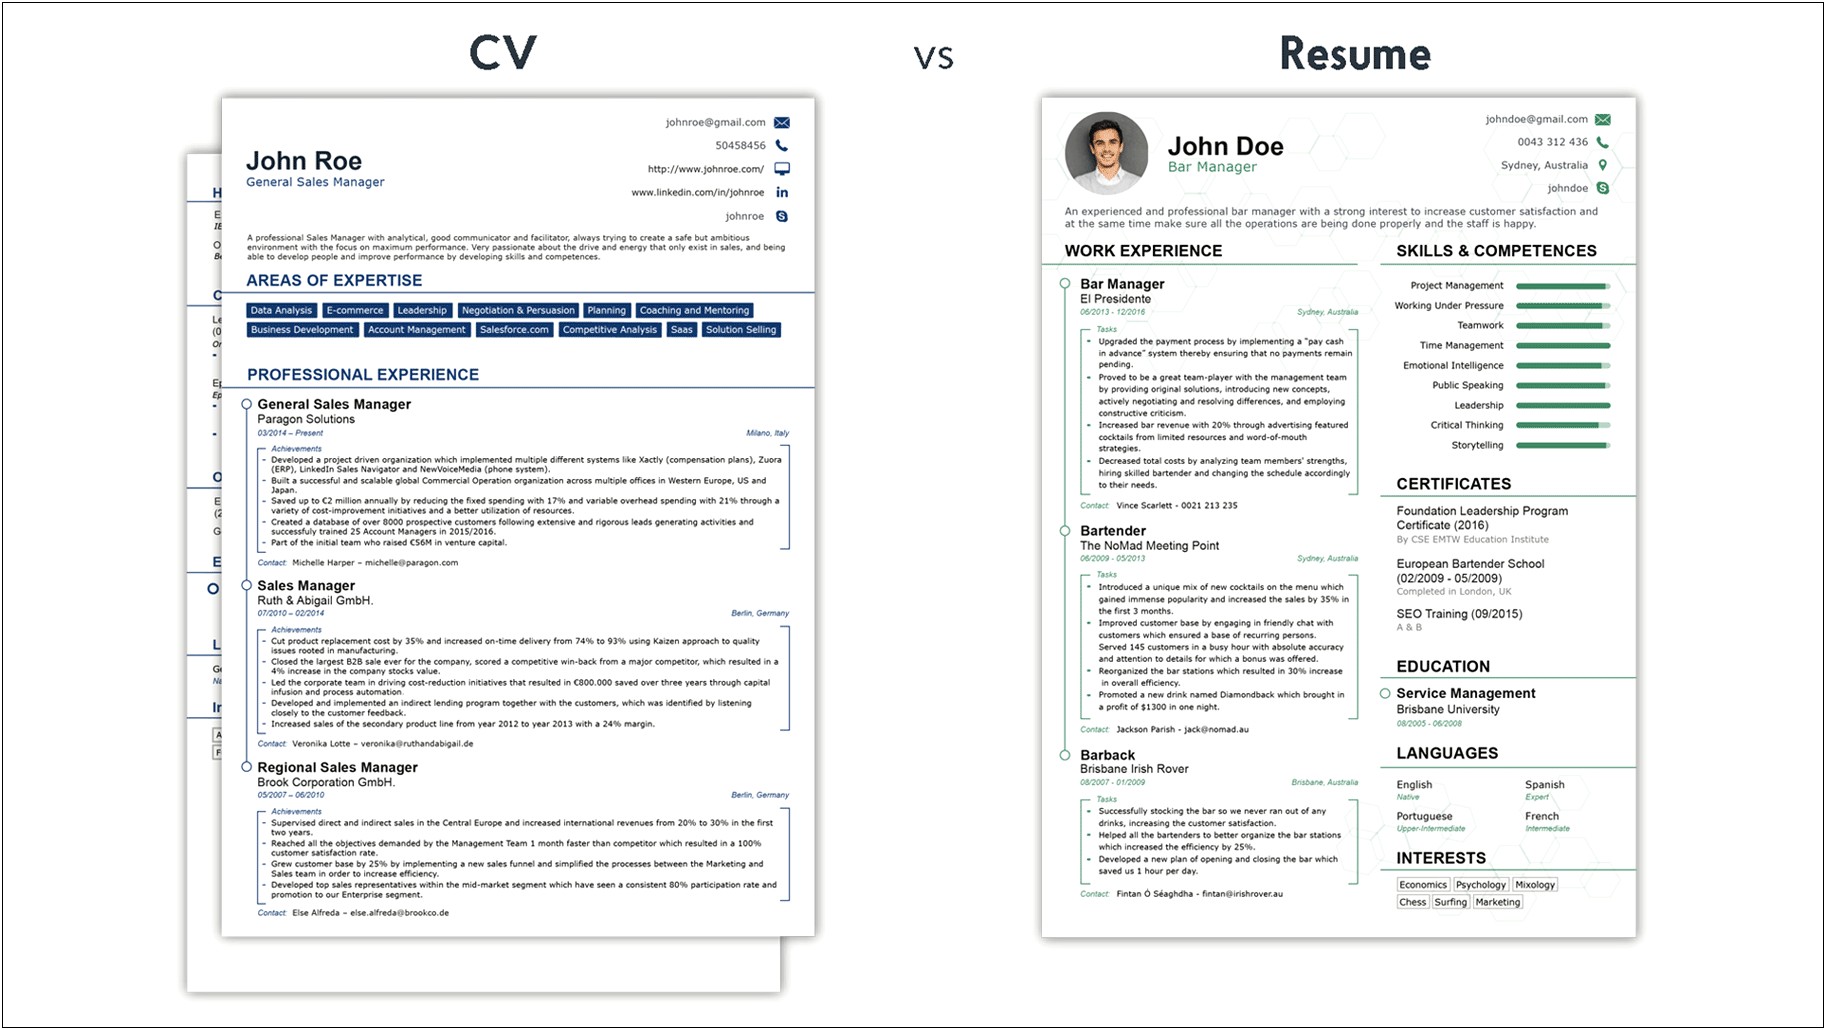 Academic Resume Vs Job Resume